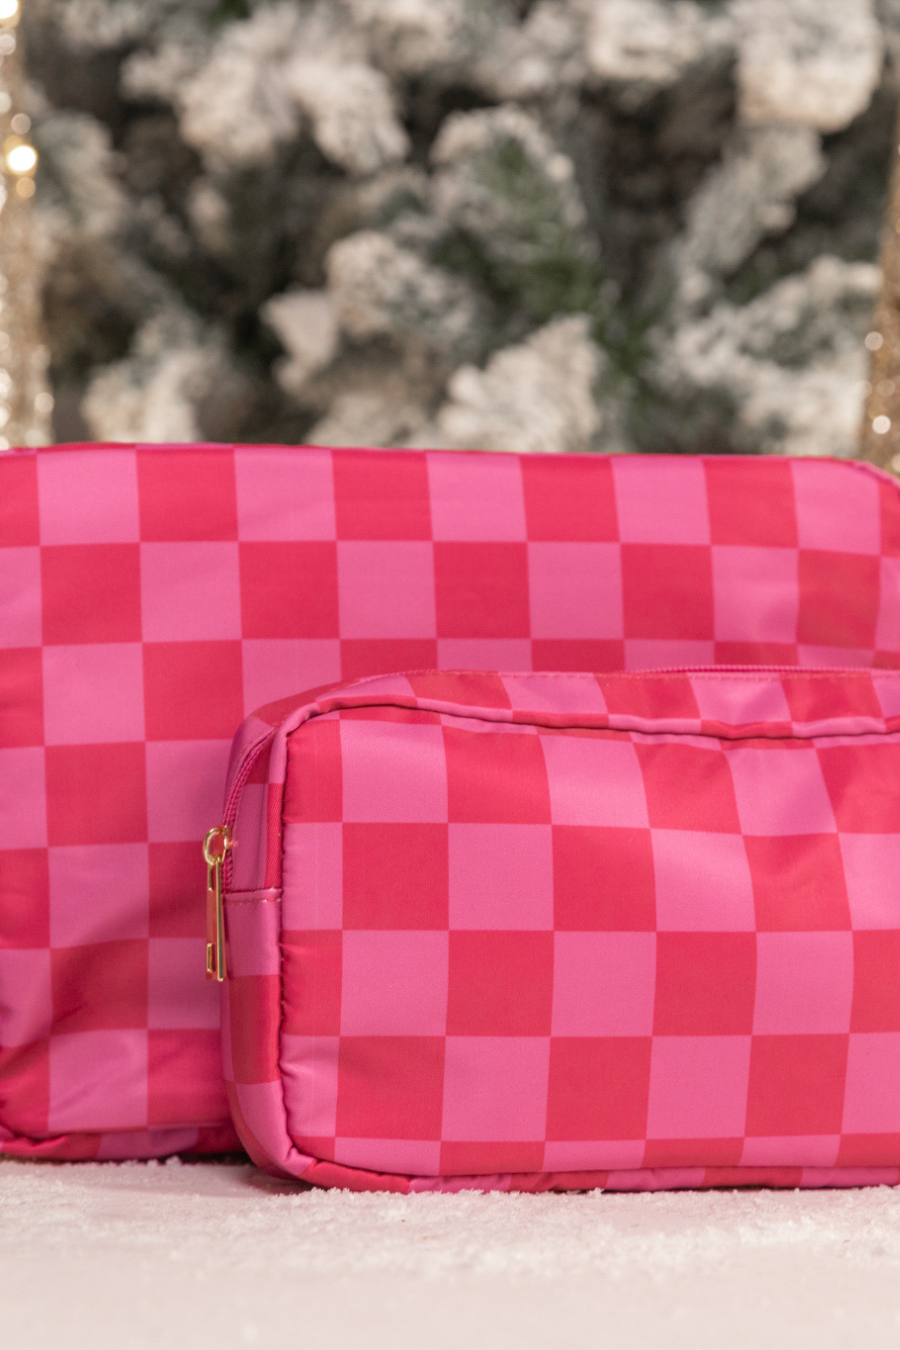 Take Me Traveling Bag Set: Textured